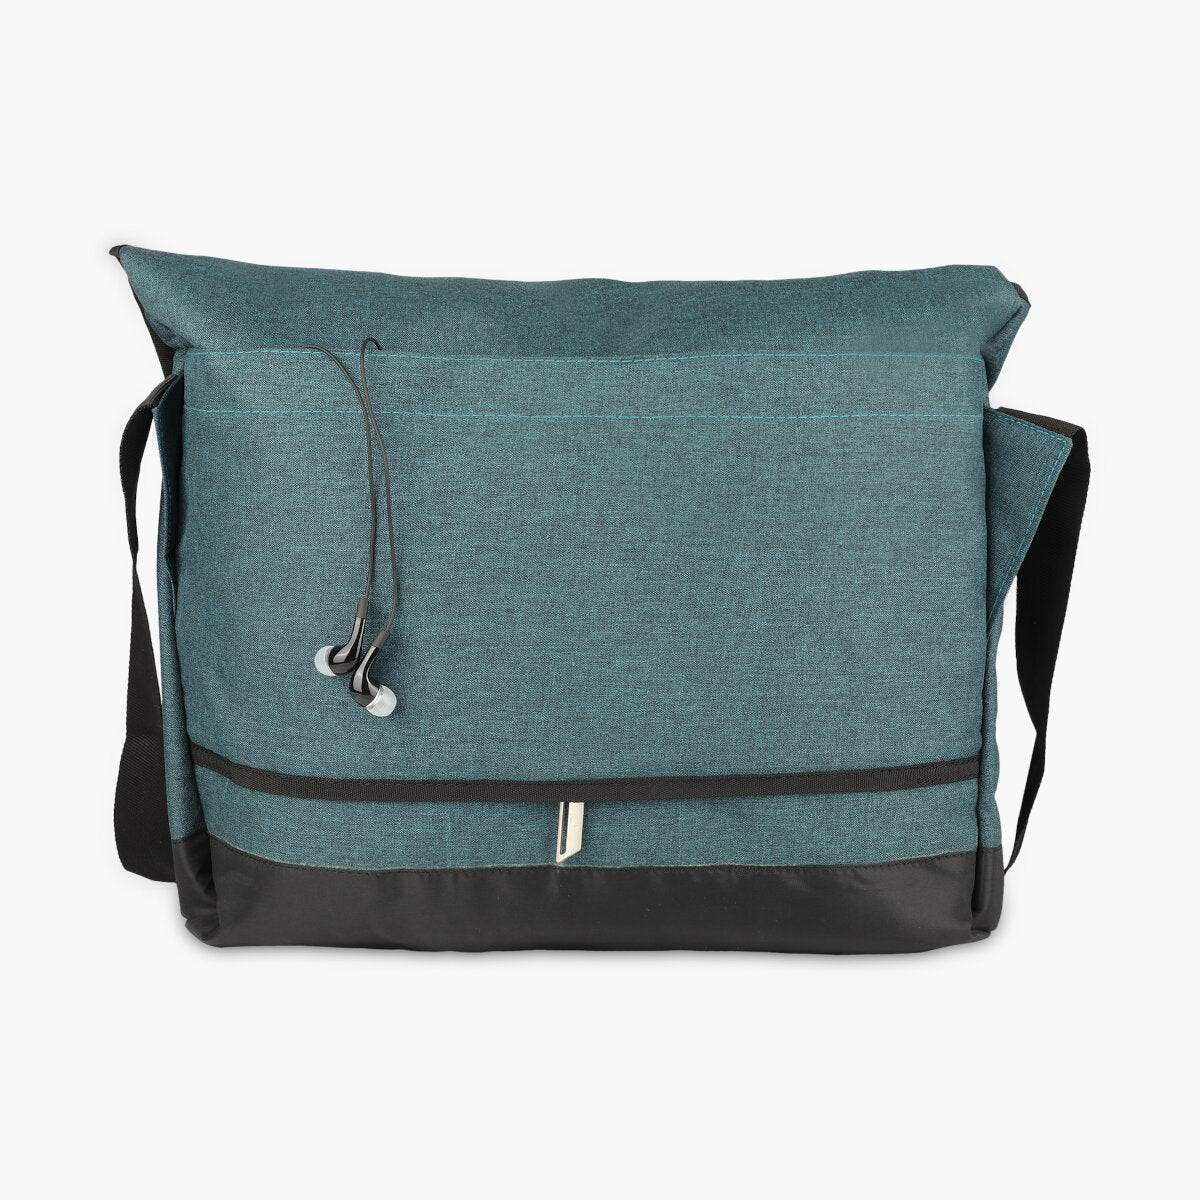 Green Moss, Protecta Leap Laptop Office Messenger Bag-5